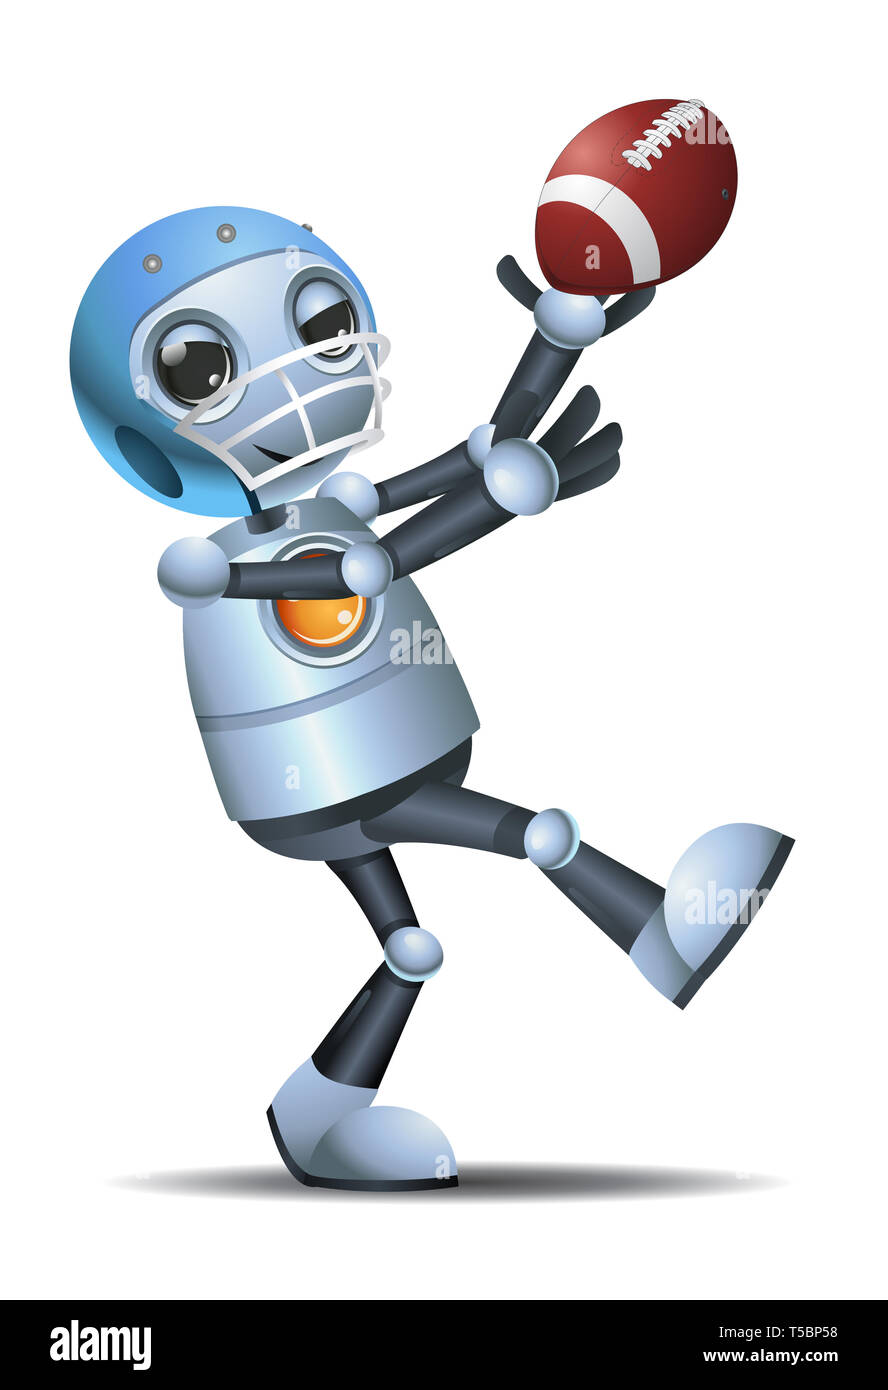 Abbildung eines kleinen Roboter empfangen rugby ball pass auf isolierten weißen Hintergrund Stockfoto